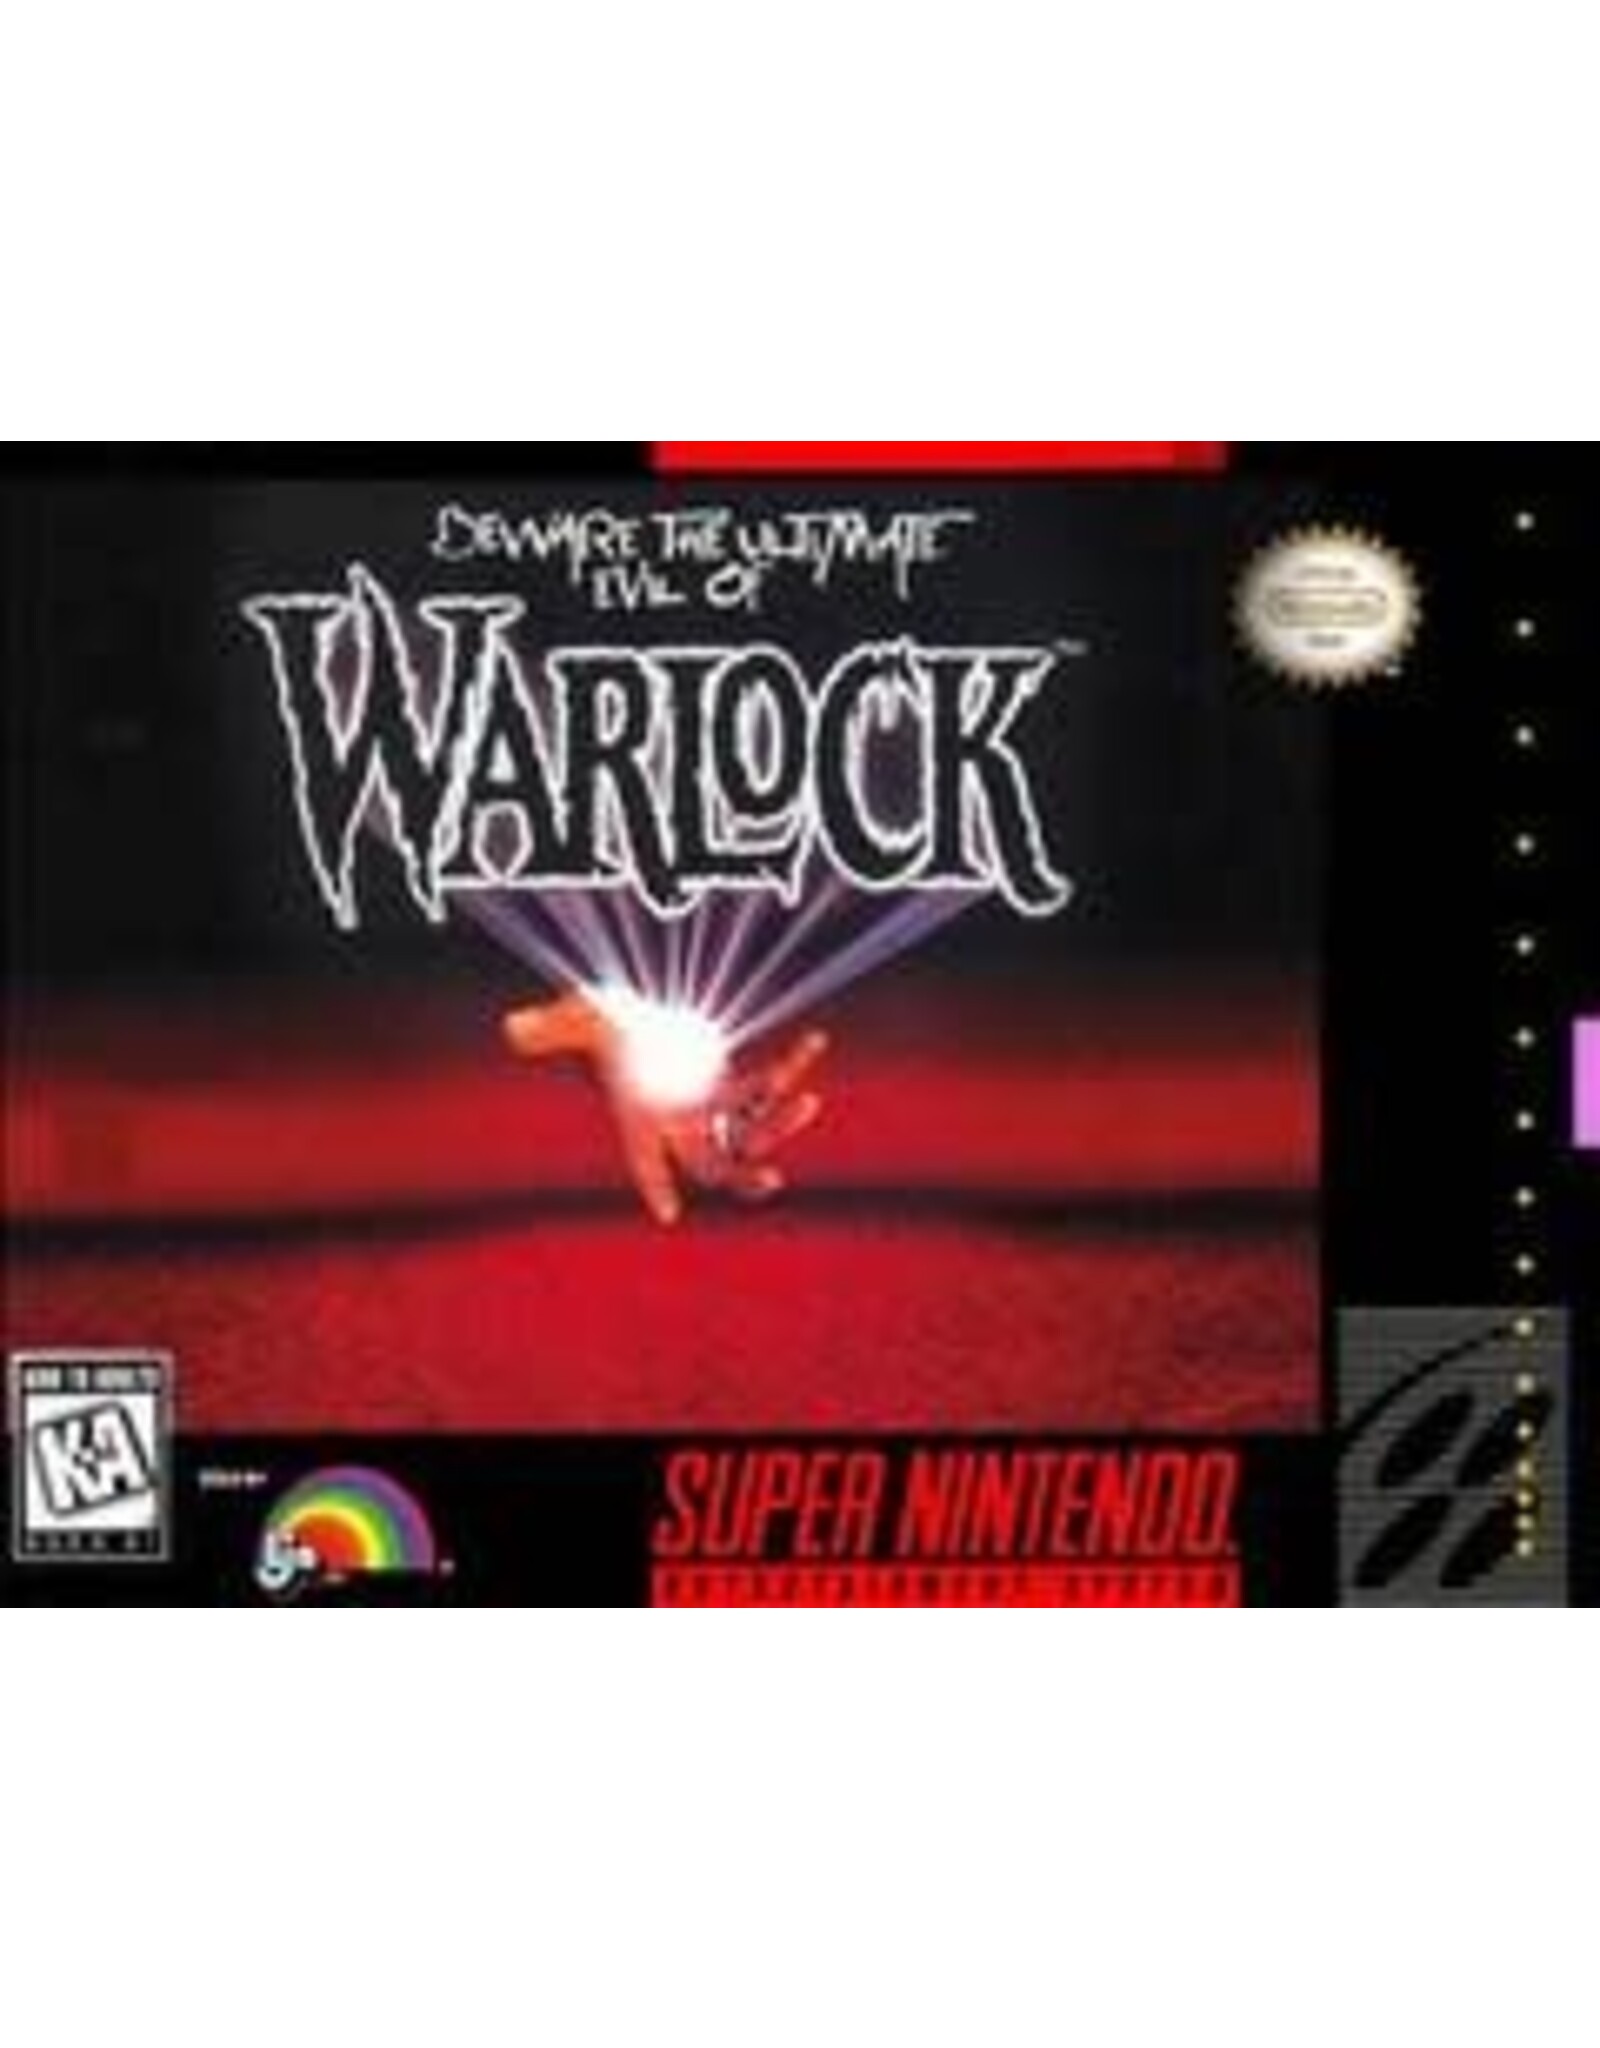 Super Nintendo Warlock (Boxed, No Manual, Damaged Box)